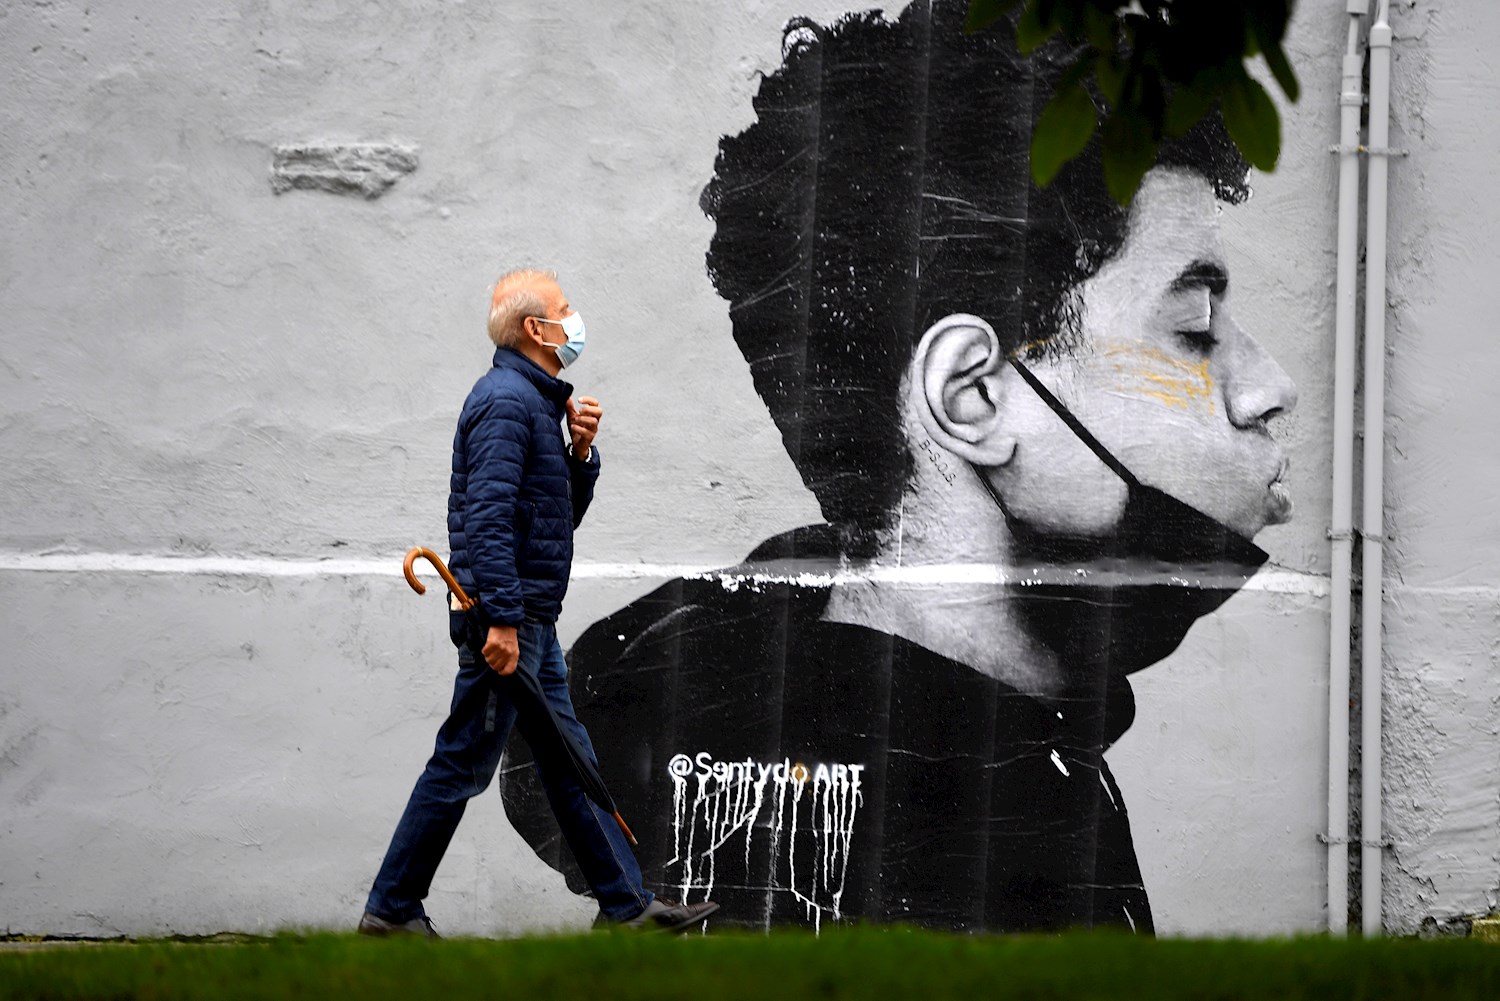 Un hombre con mascarilla camina delante de una obra del artista @Sentydo ART en una campaña dedicada a los besos sin mascarillas. EFE/ Eloy Alonso